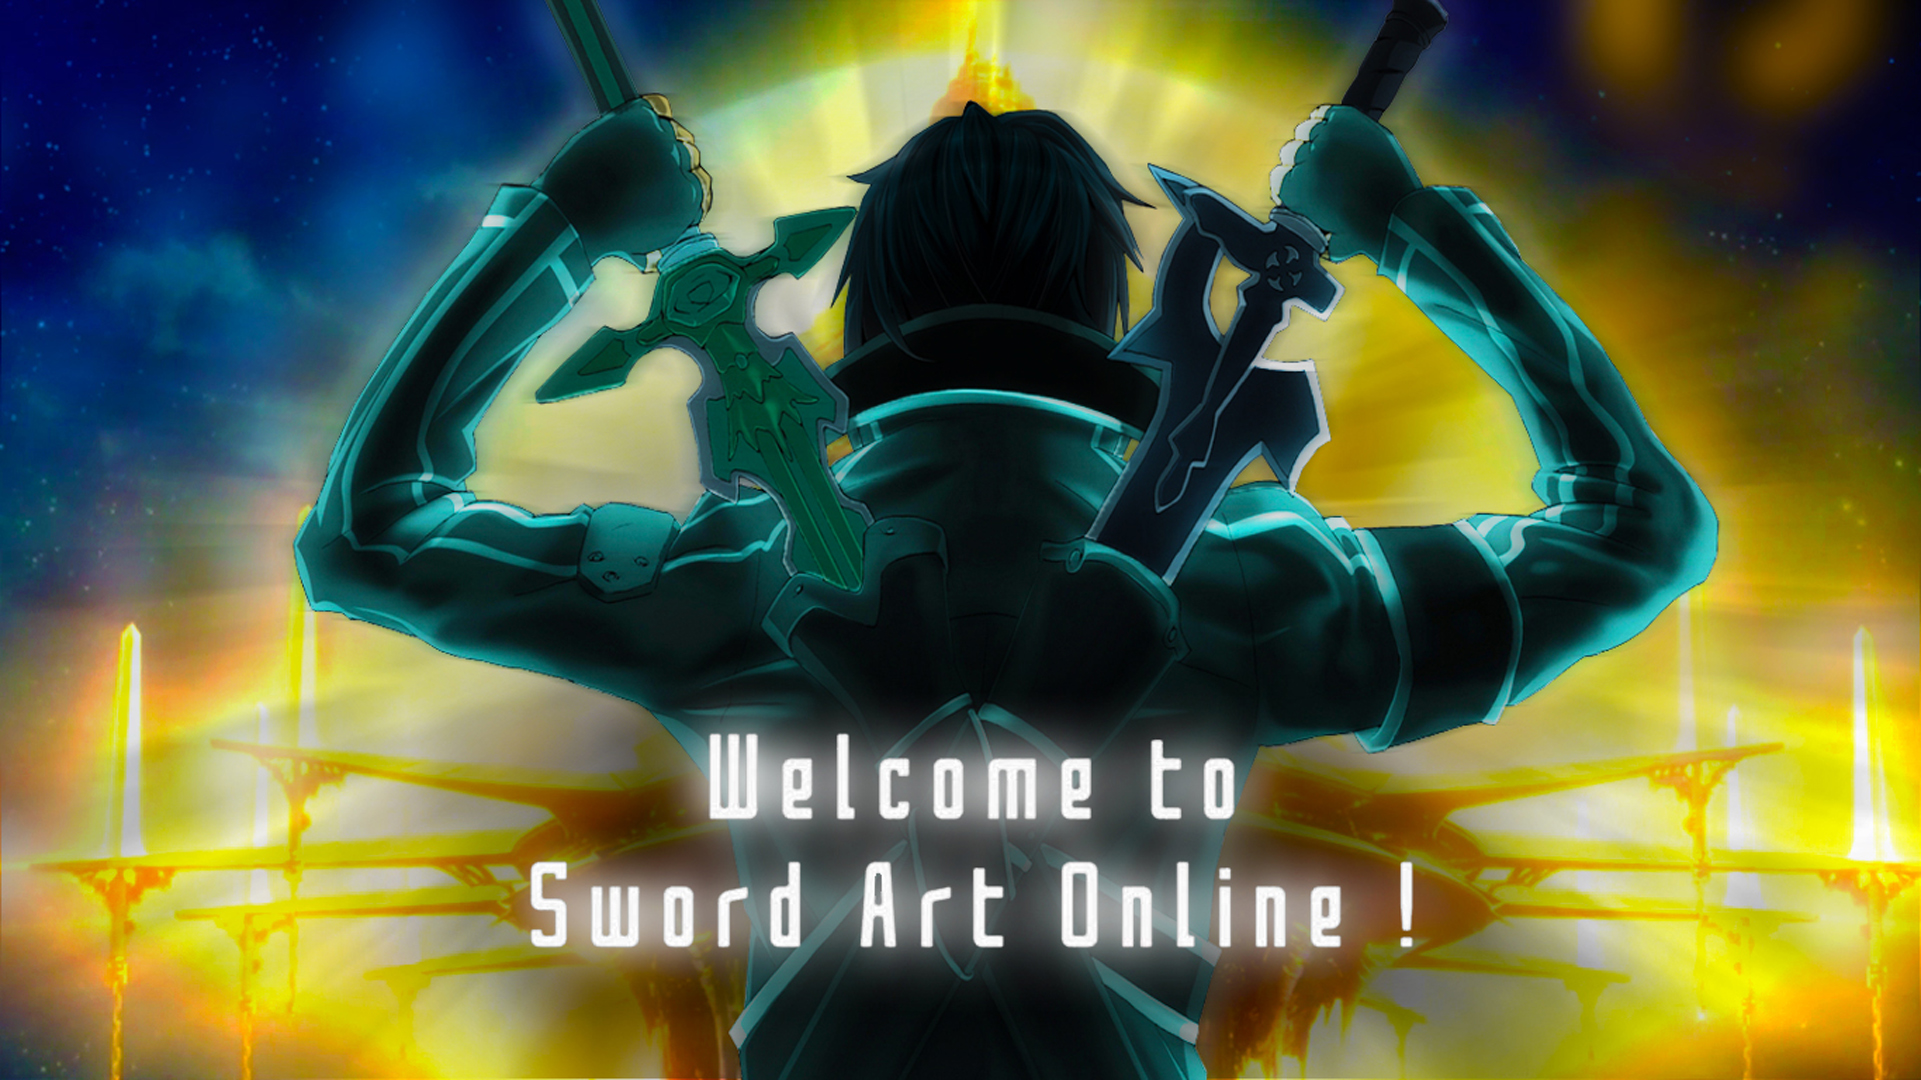 Free download wallpaper Anime, Sword Art Online, Kirito (Sword Art Online), Kazuto Kirigaya on your PC desktop